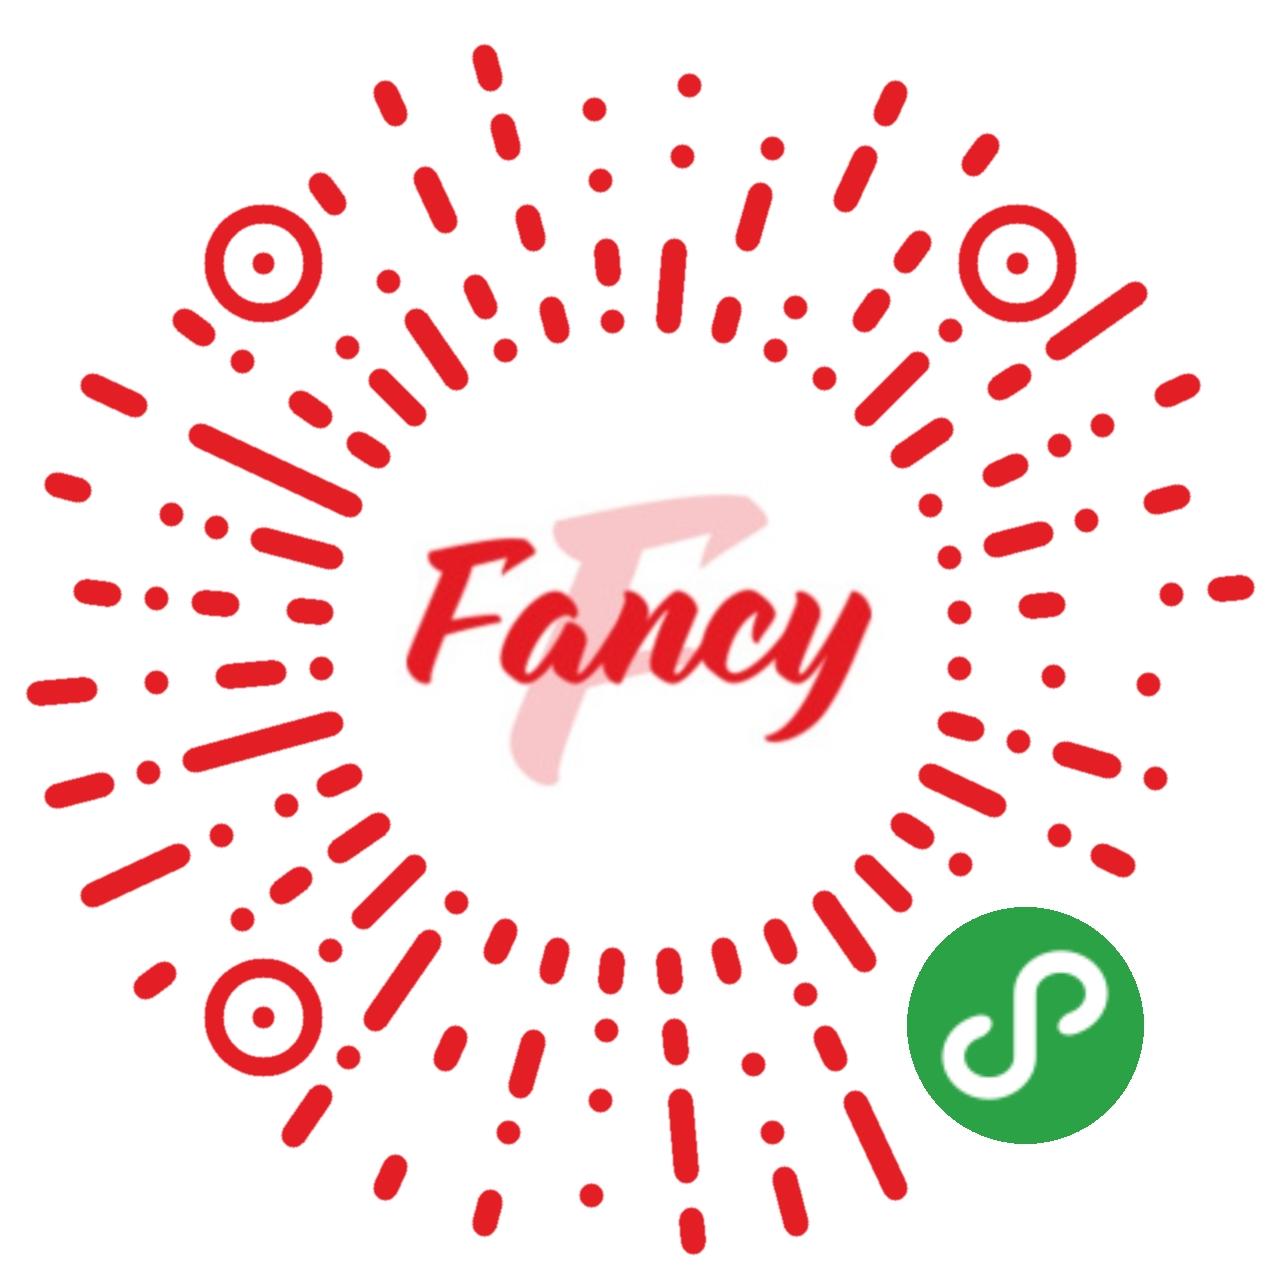 FancyZone_FancyZone小程序_FancyZone微信小程序